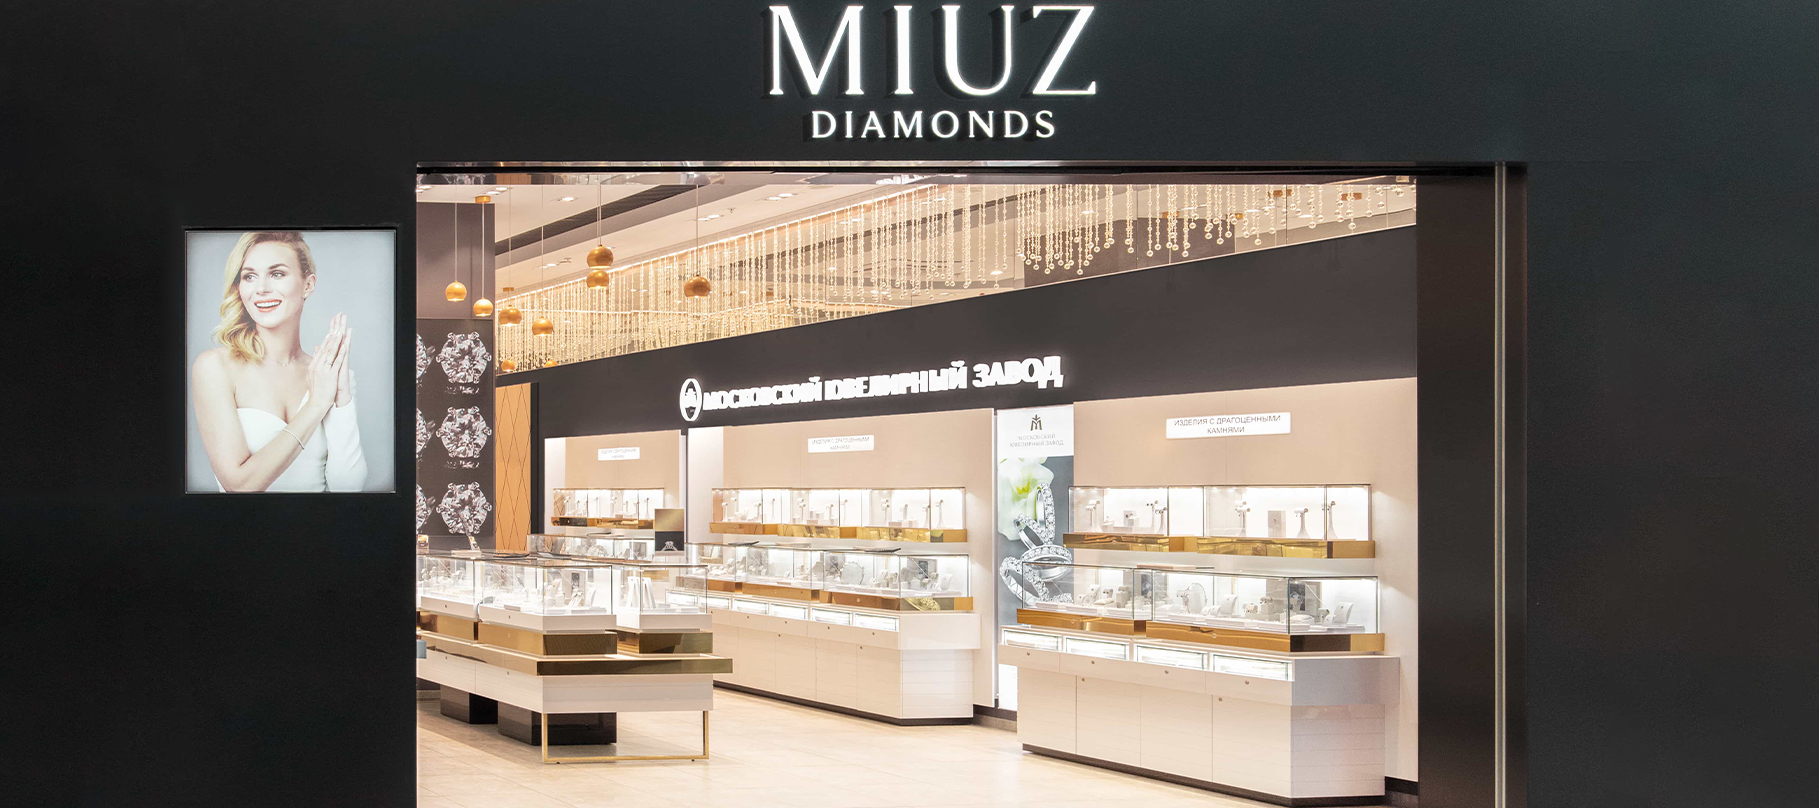 MIUZ Diamonds Авиапарк (ювелирный центр) в городе Москва – полнаяинформация о магазине